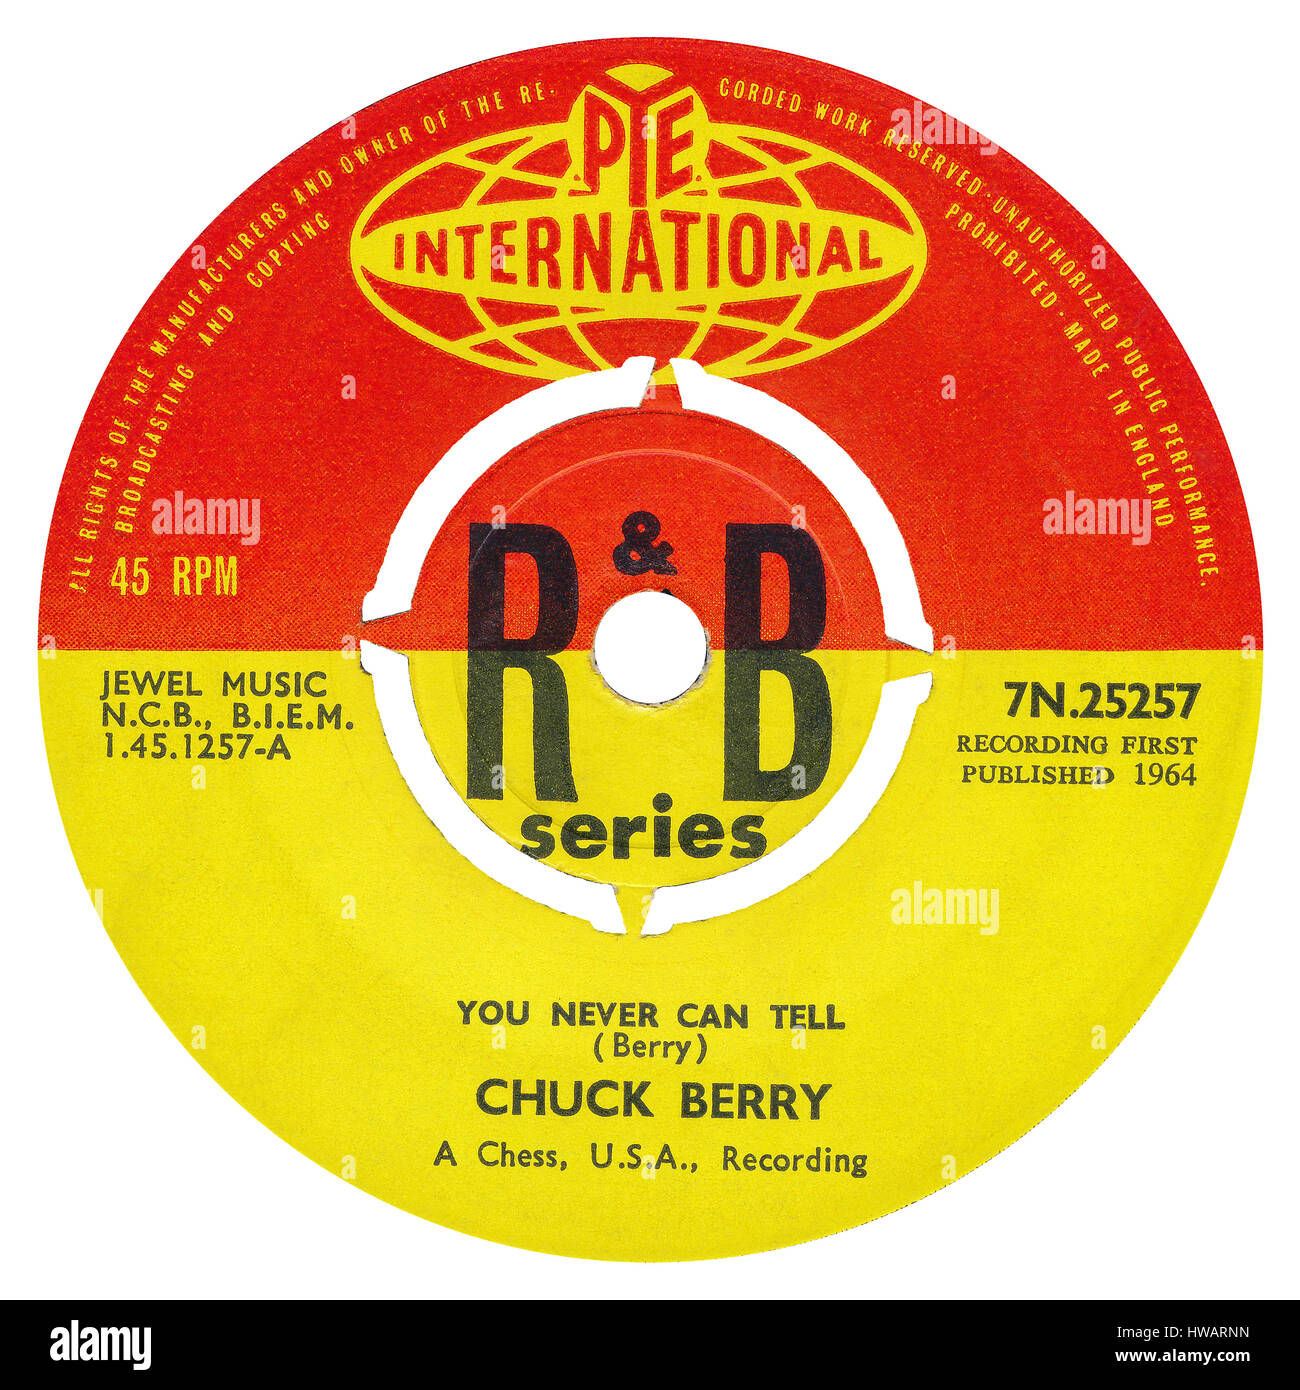 45 RPM 7' del sello discográfico británico nunca puedes decir por Chuck Berry en la Pye etiqueta internacional desde agosto de 1964. Foto de stock